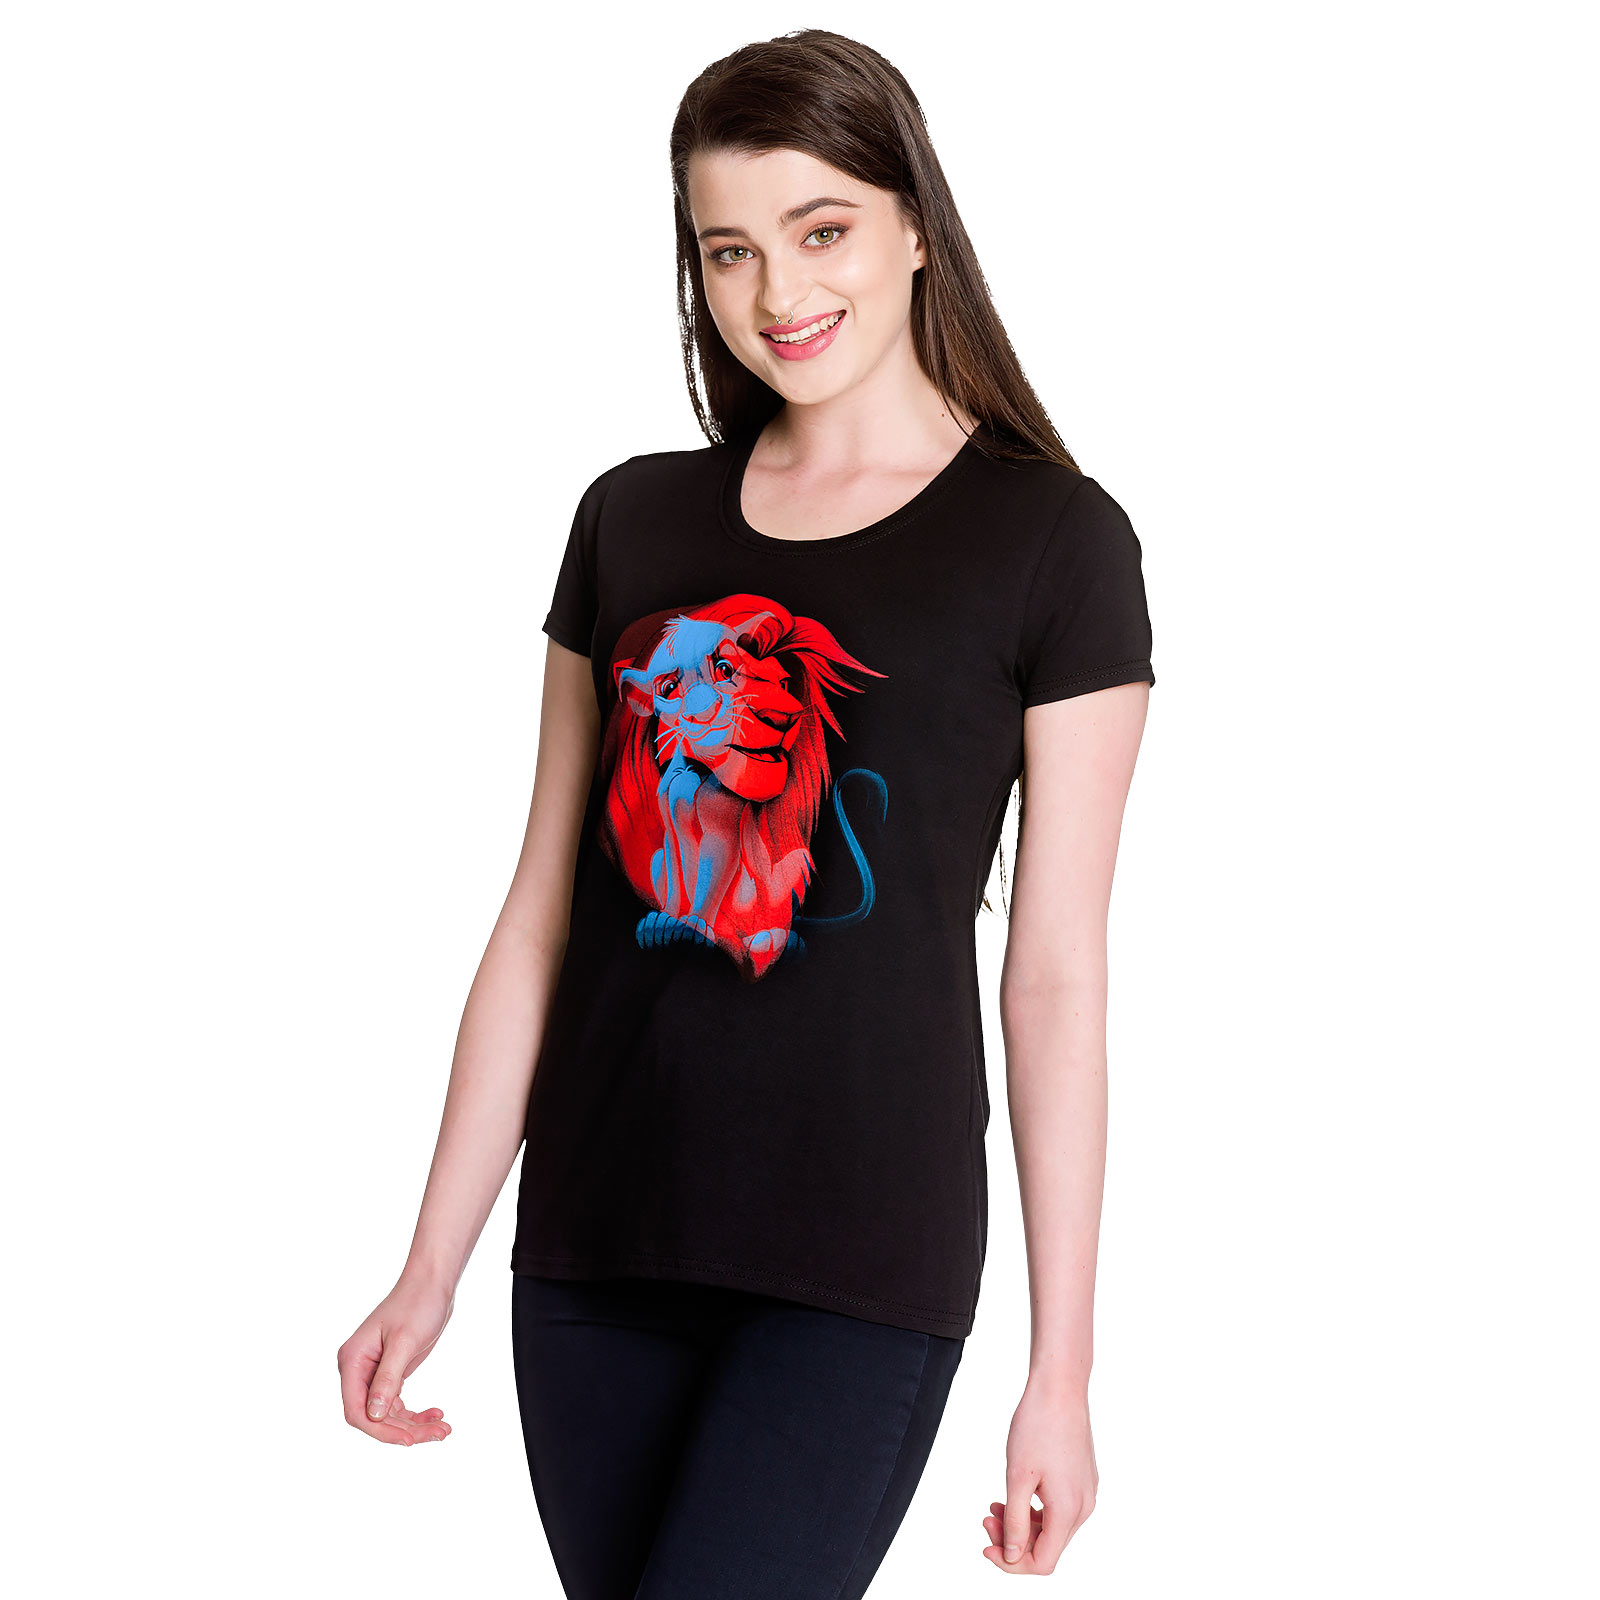 The Lion King - Simba Women's T-Shirt